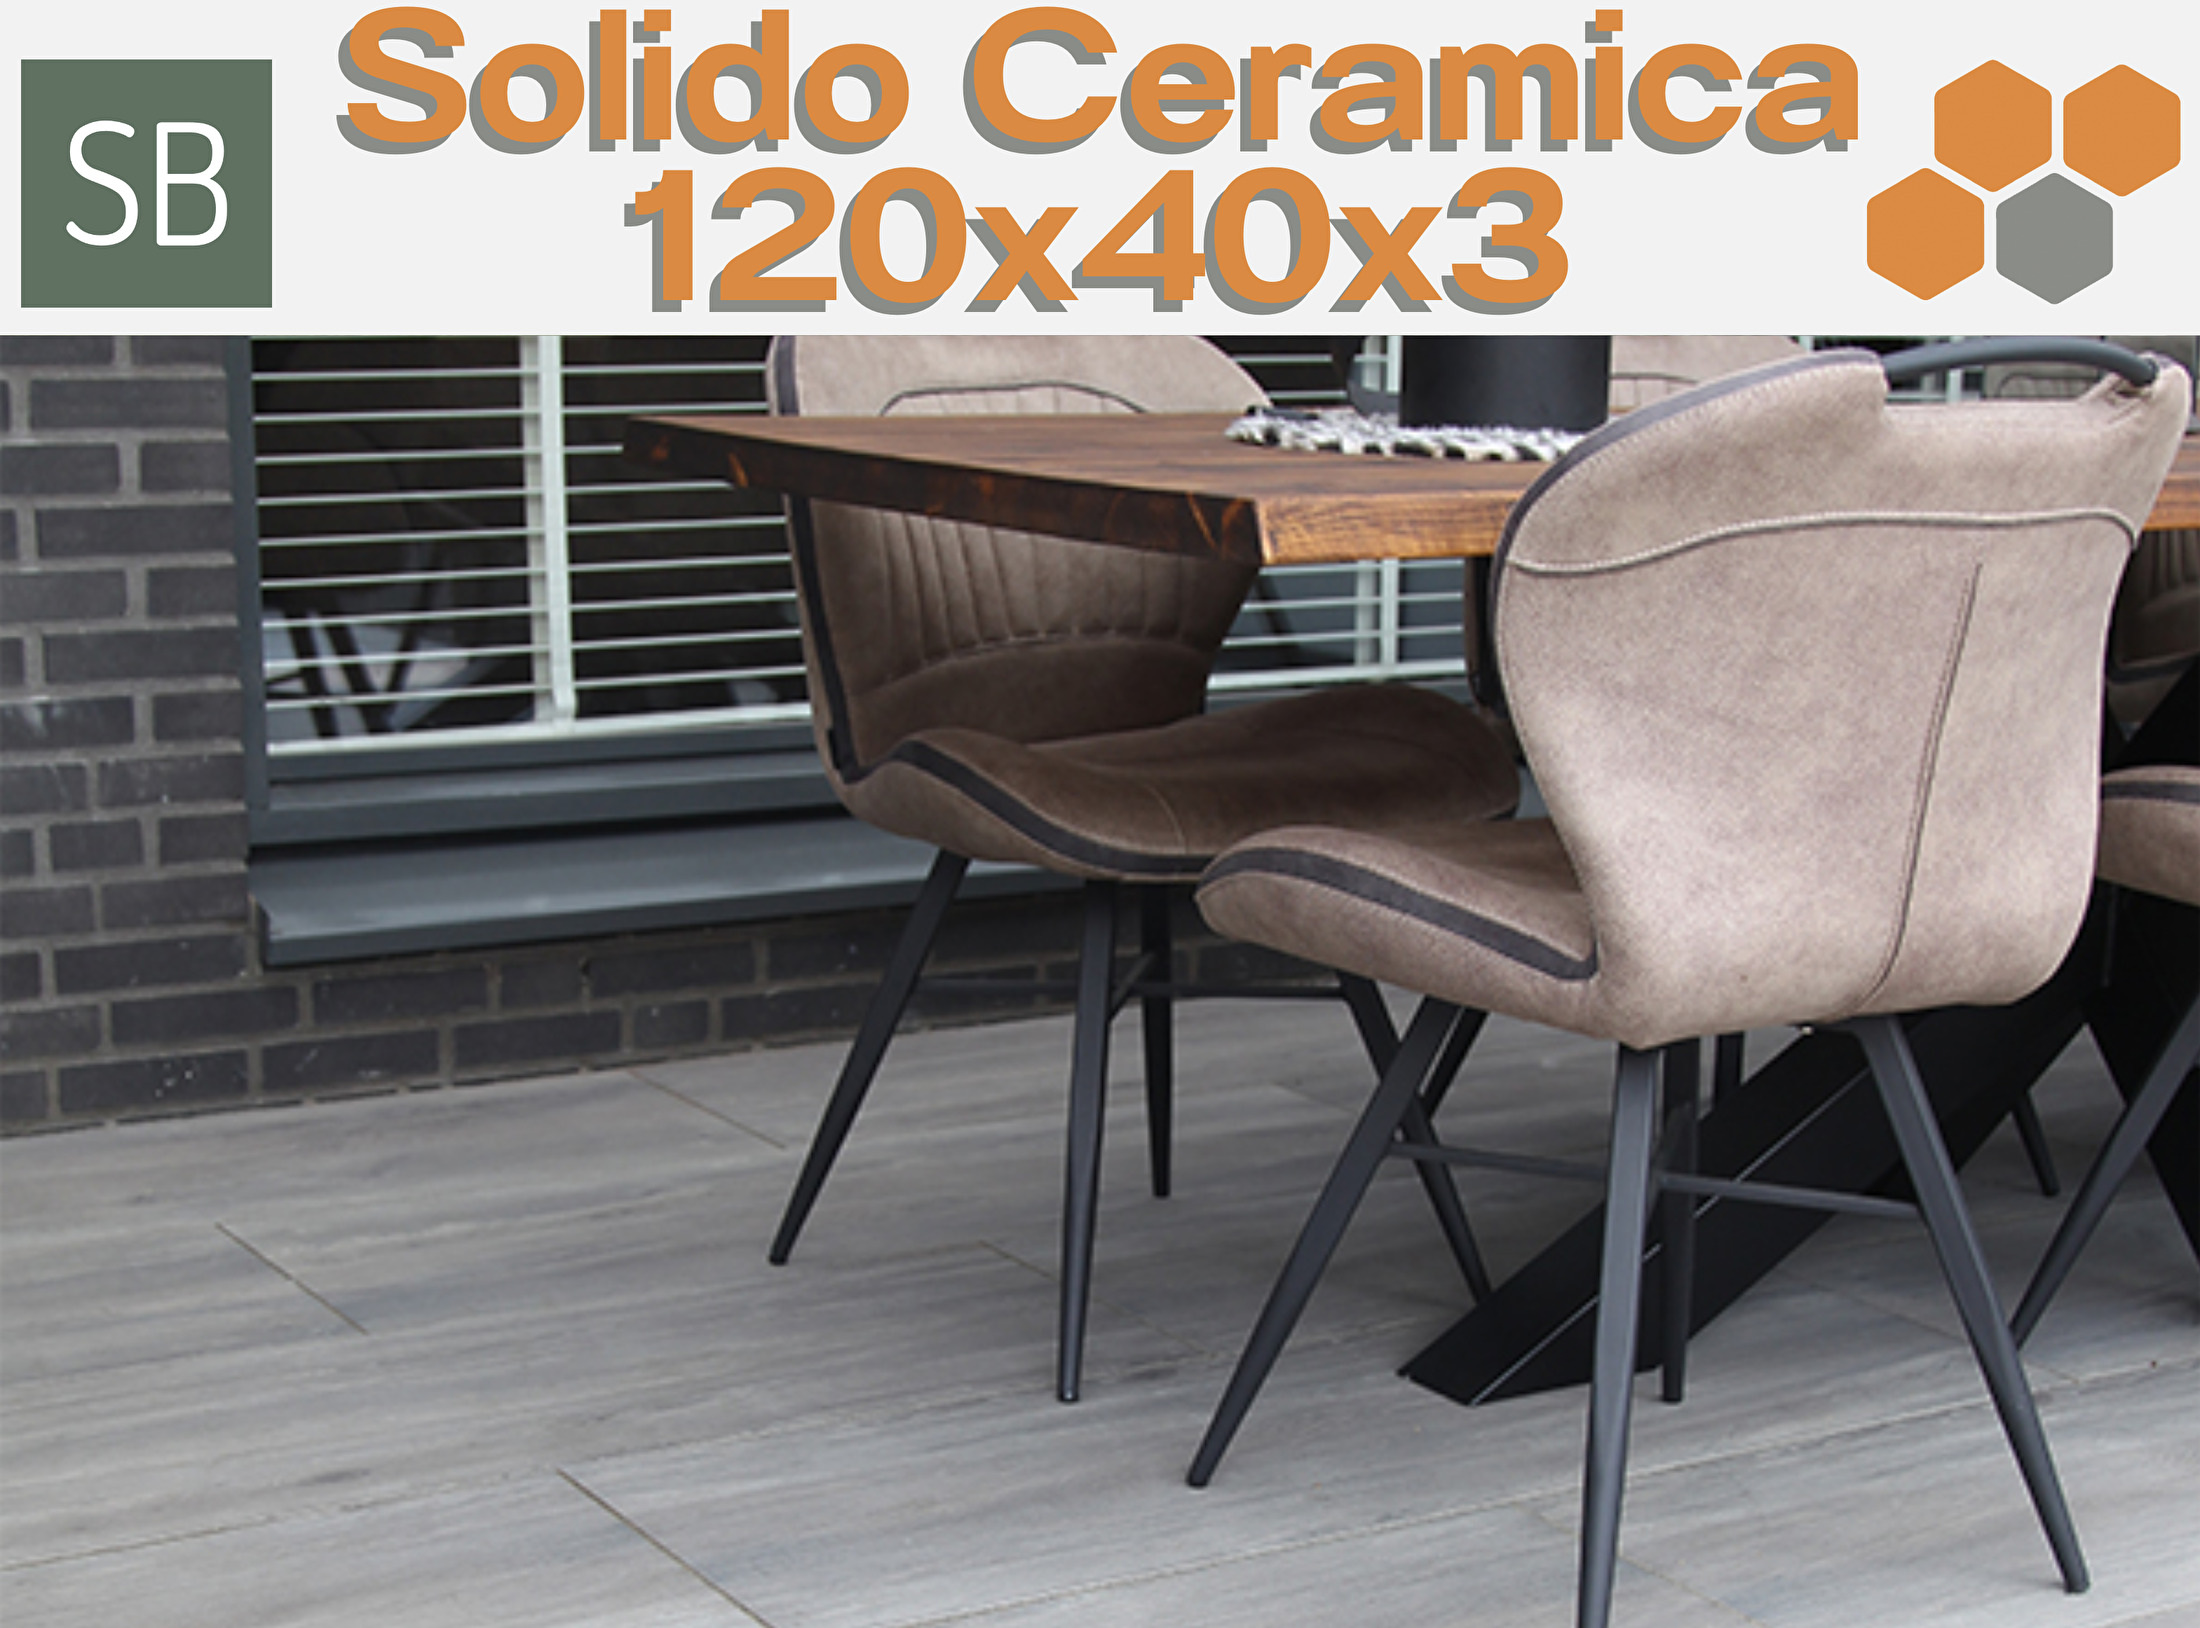 Solido Ceramica tegels 120x40x3 cm